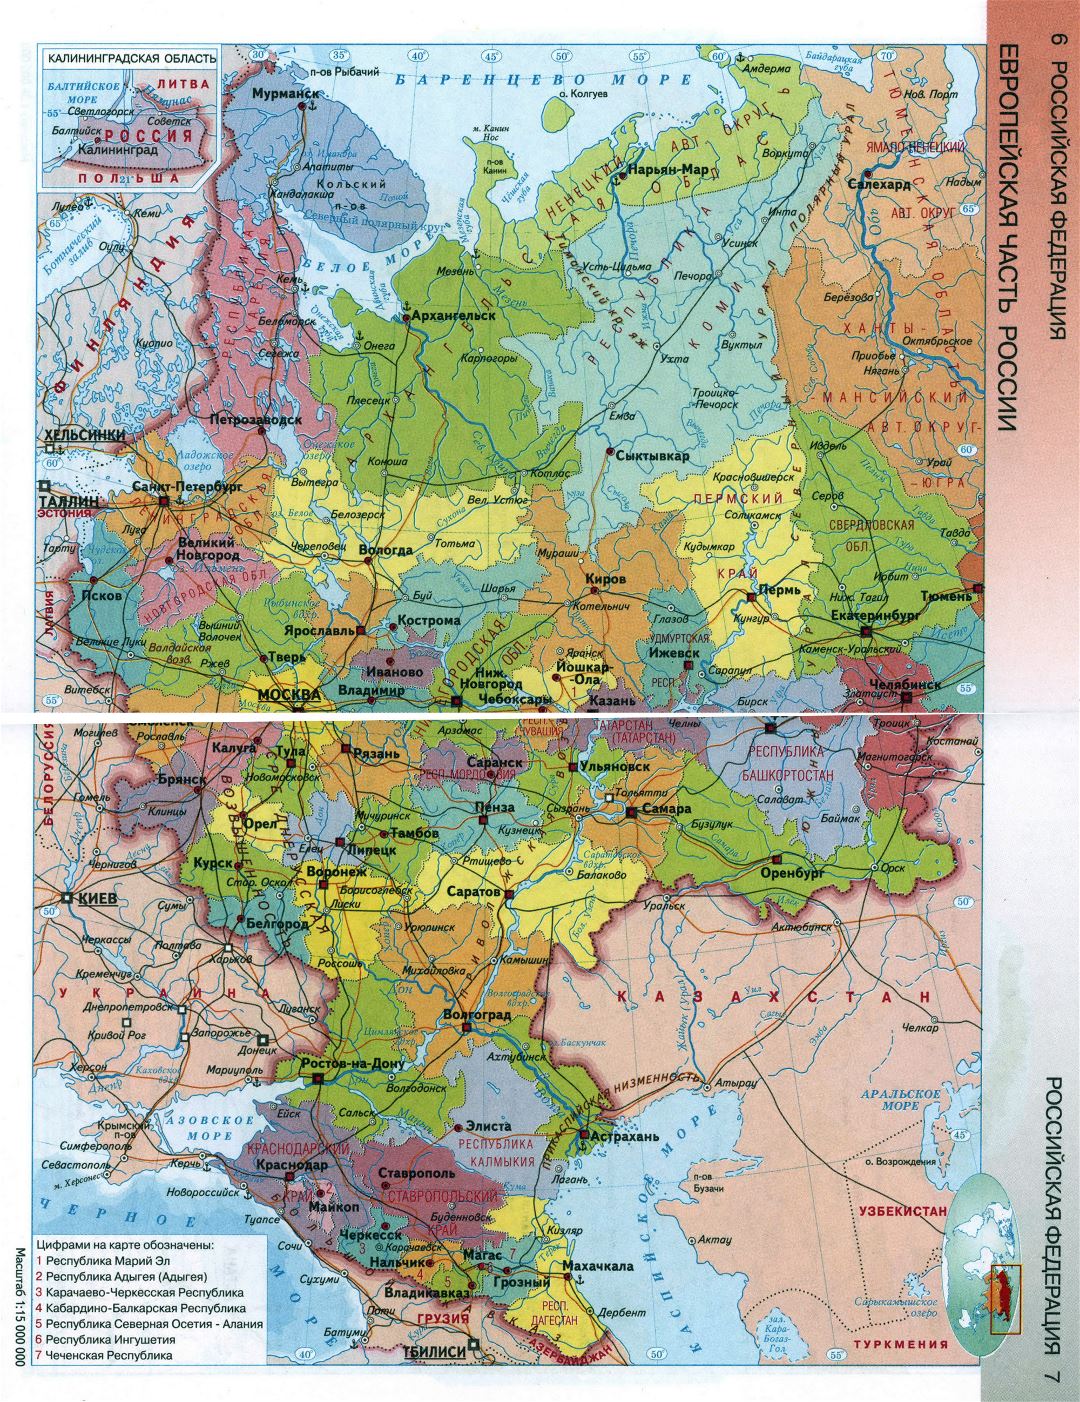 Большая детальная карта Европейской части Российской Федерации на русском языке